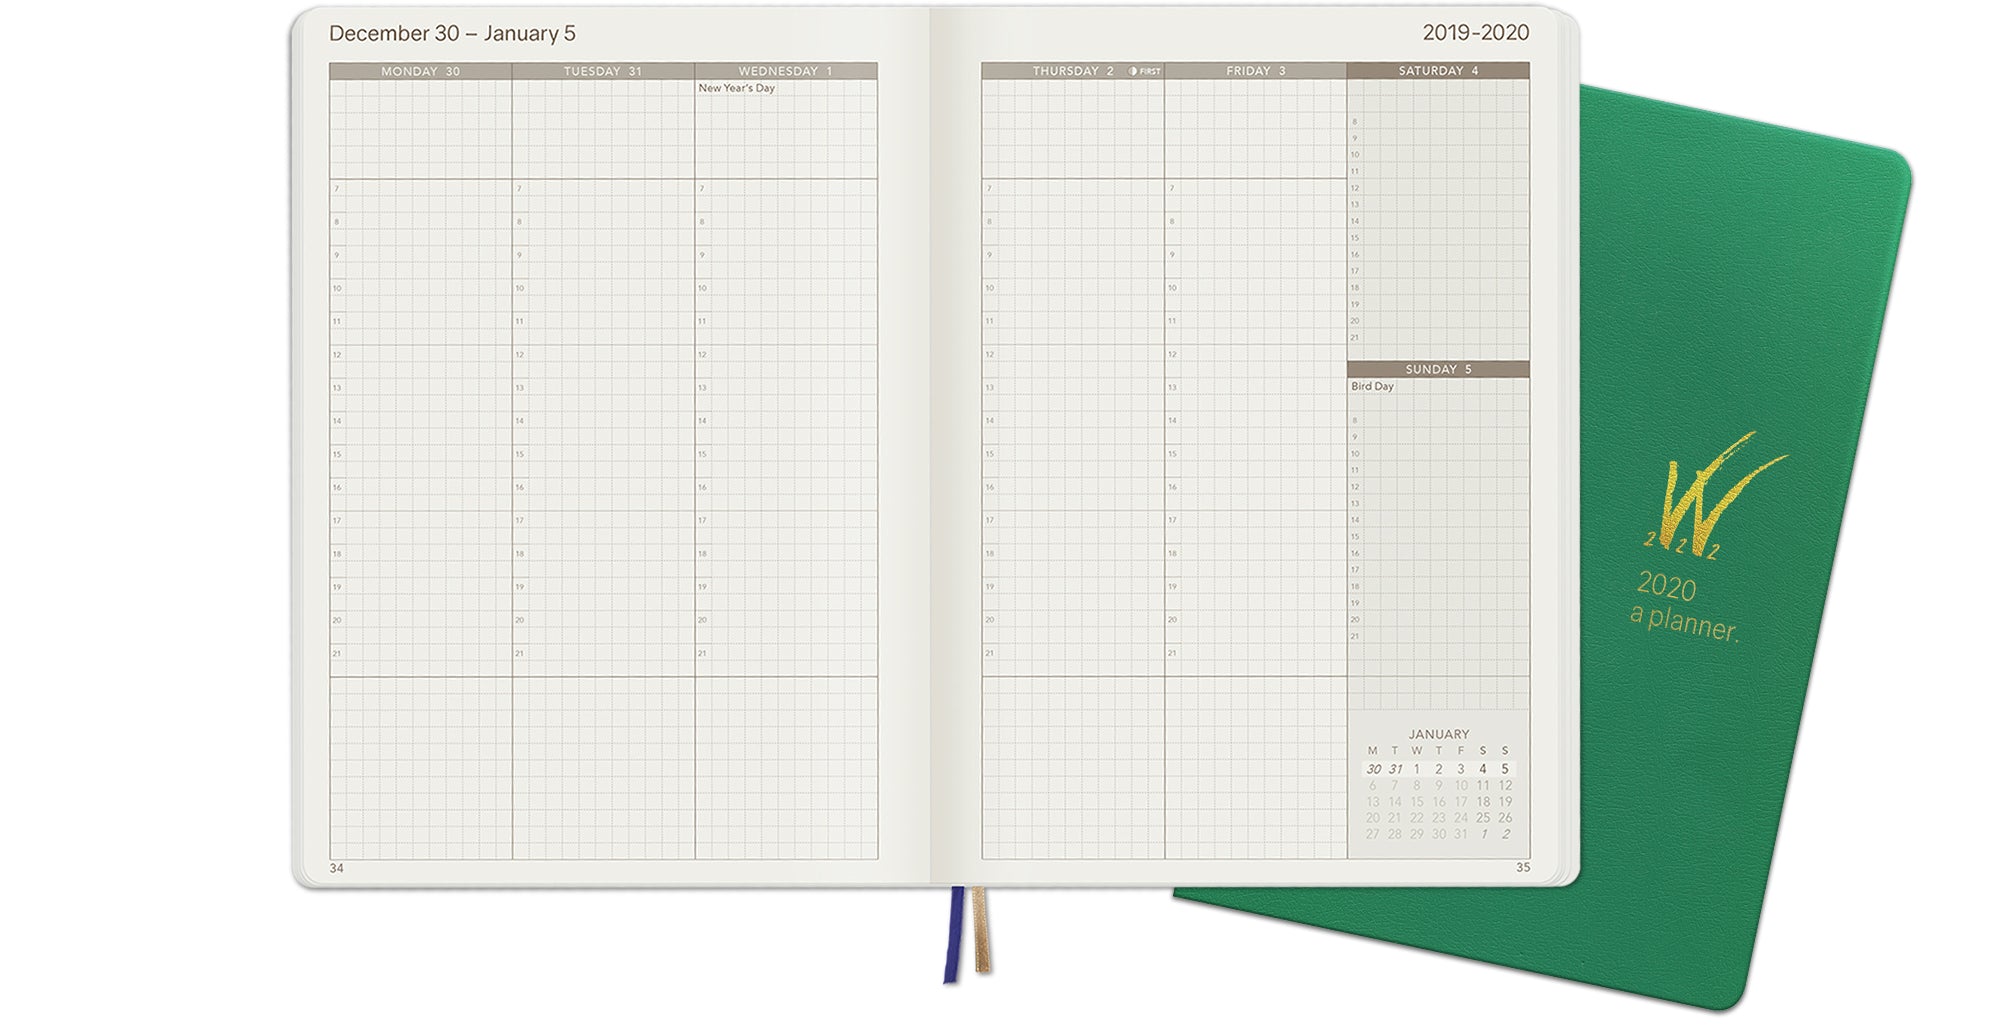 VBWeeks Planner Notebook V.2